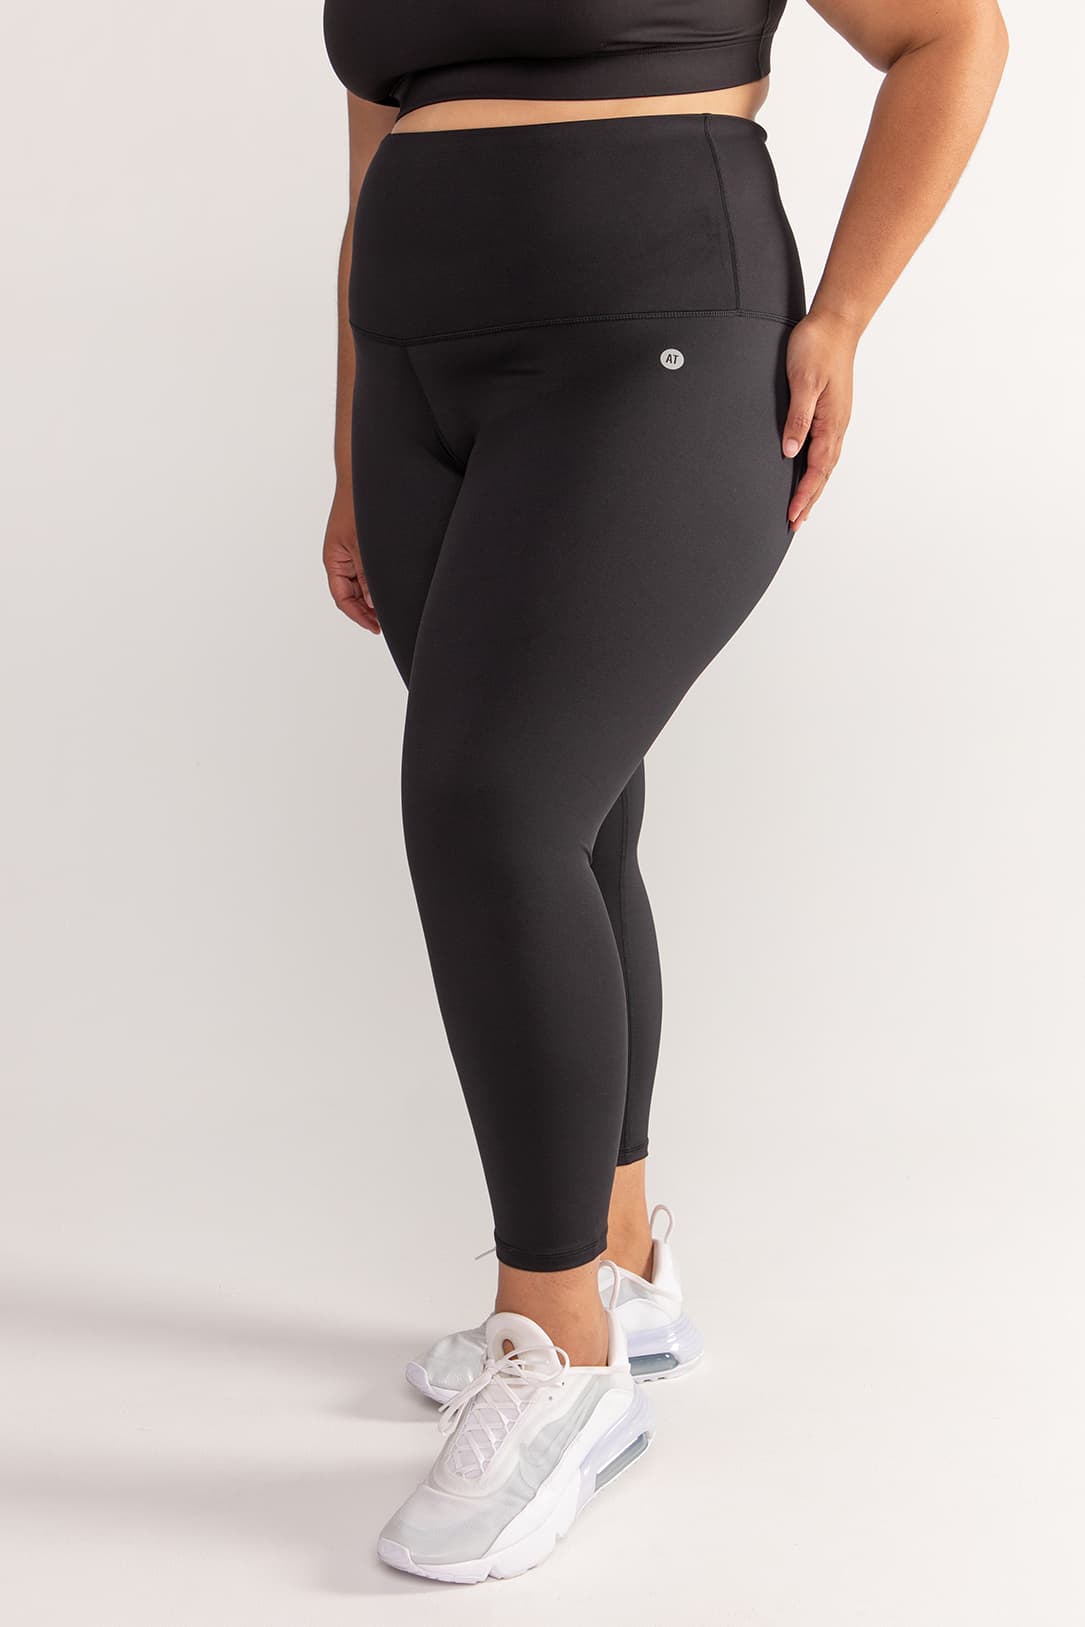 Shape Black Branded Gym Leggings | Shape | PrettyLittleThing